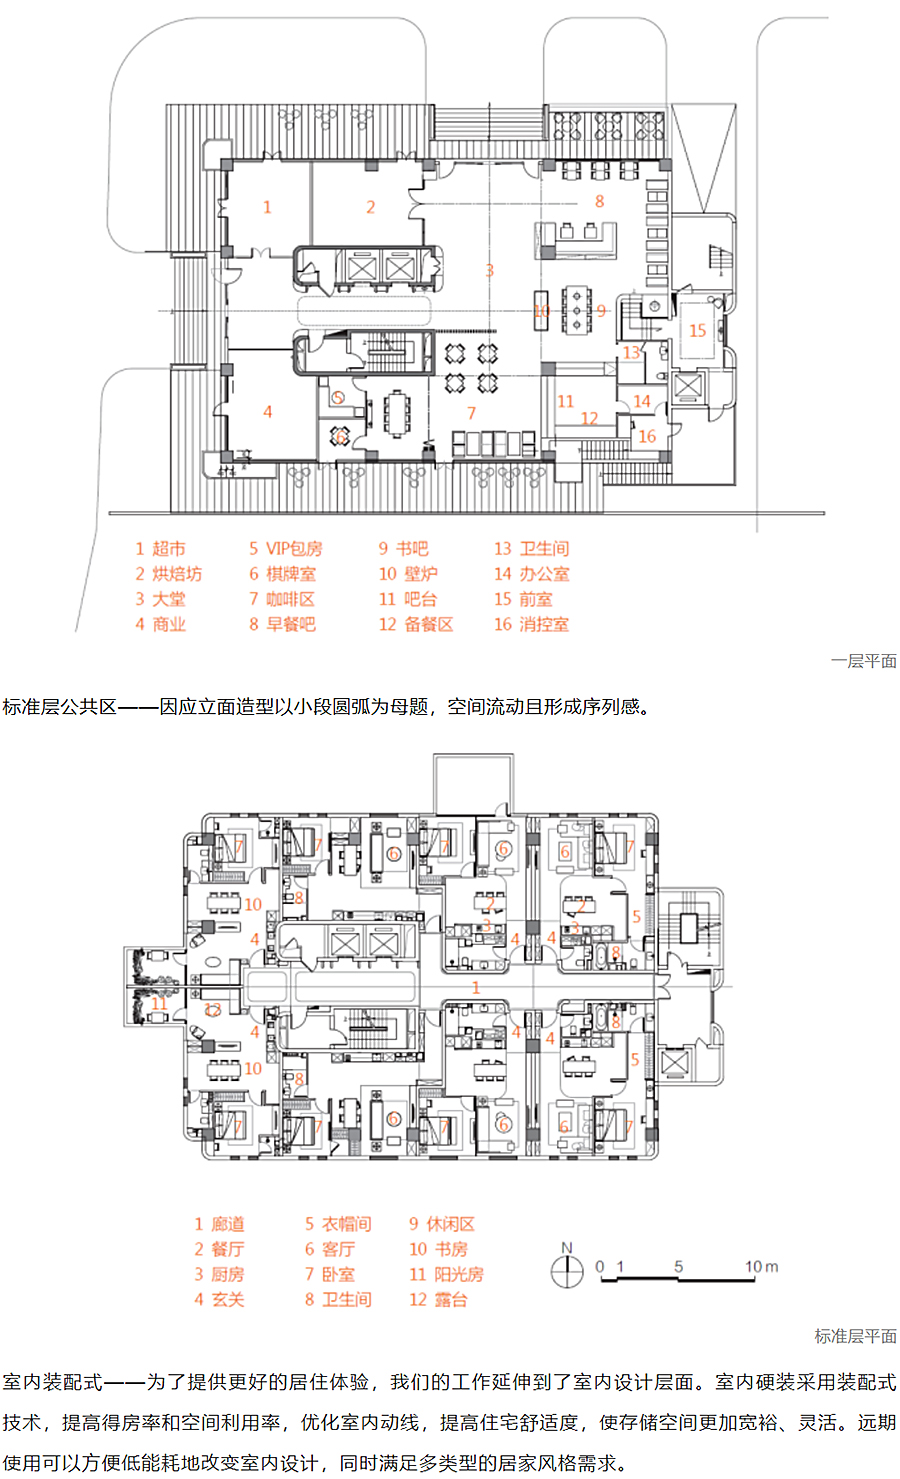 上海地产-_-城方城寓超级社区华山路店_0004_图层-5.jpg